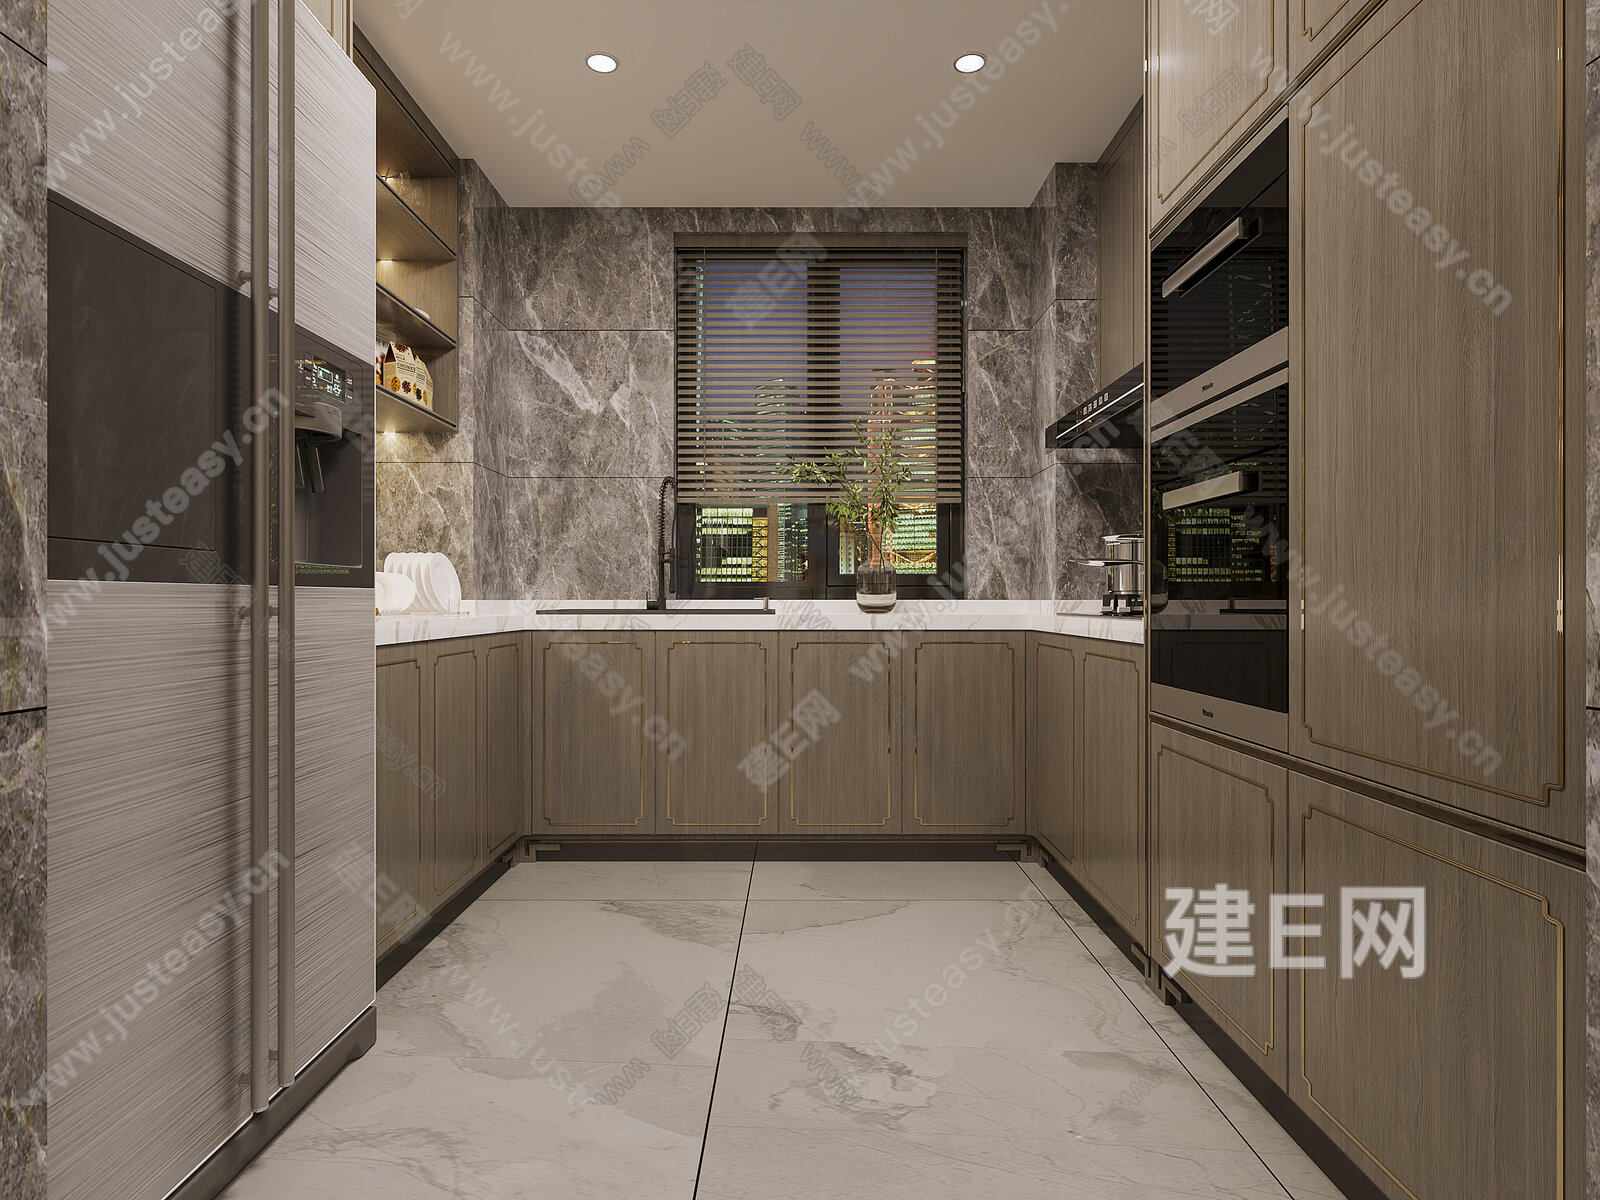 新中式封闭式厨房3D模型下载【ID:1113840886】_知末3d模型网